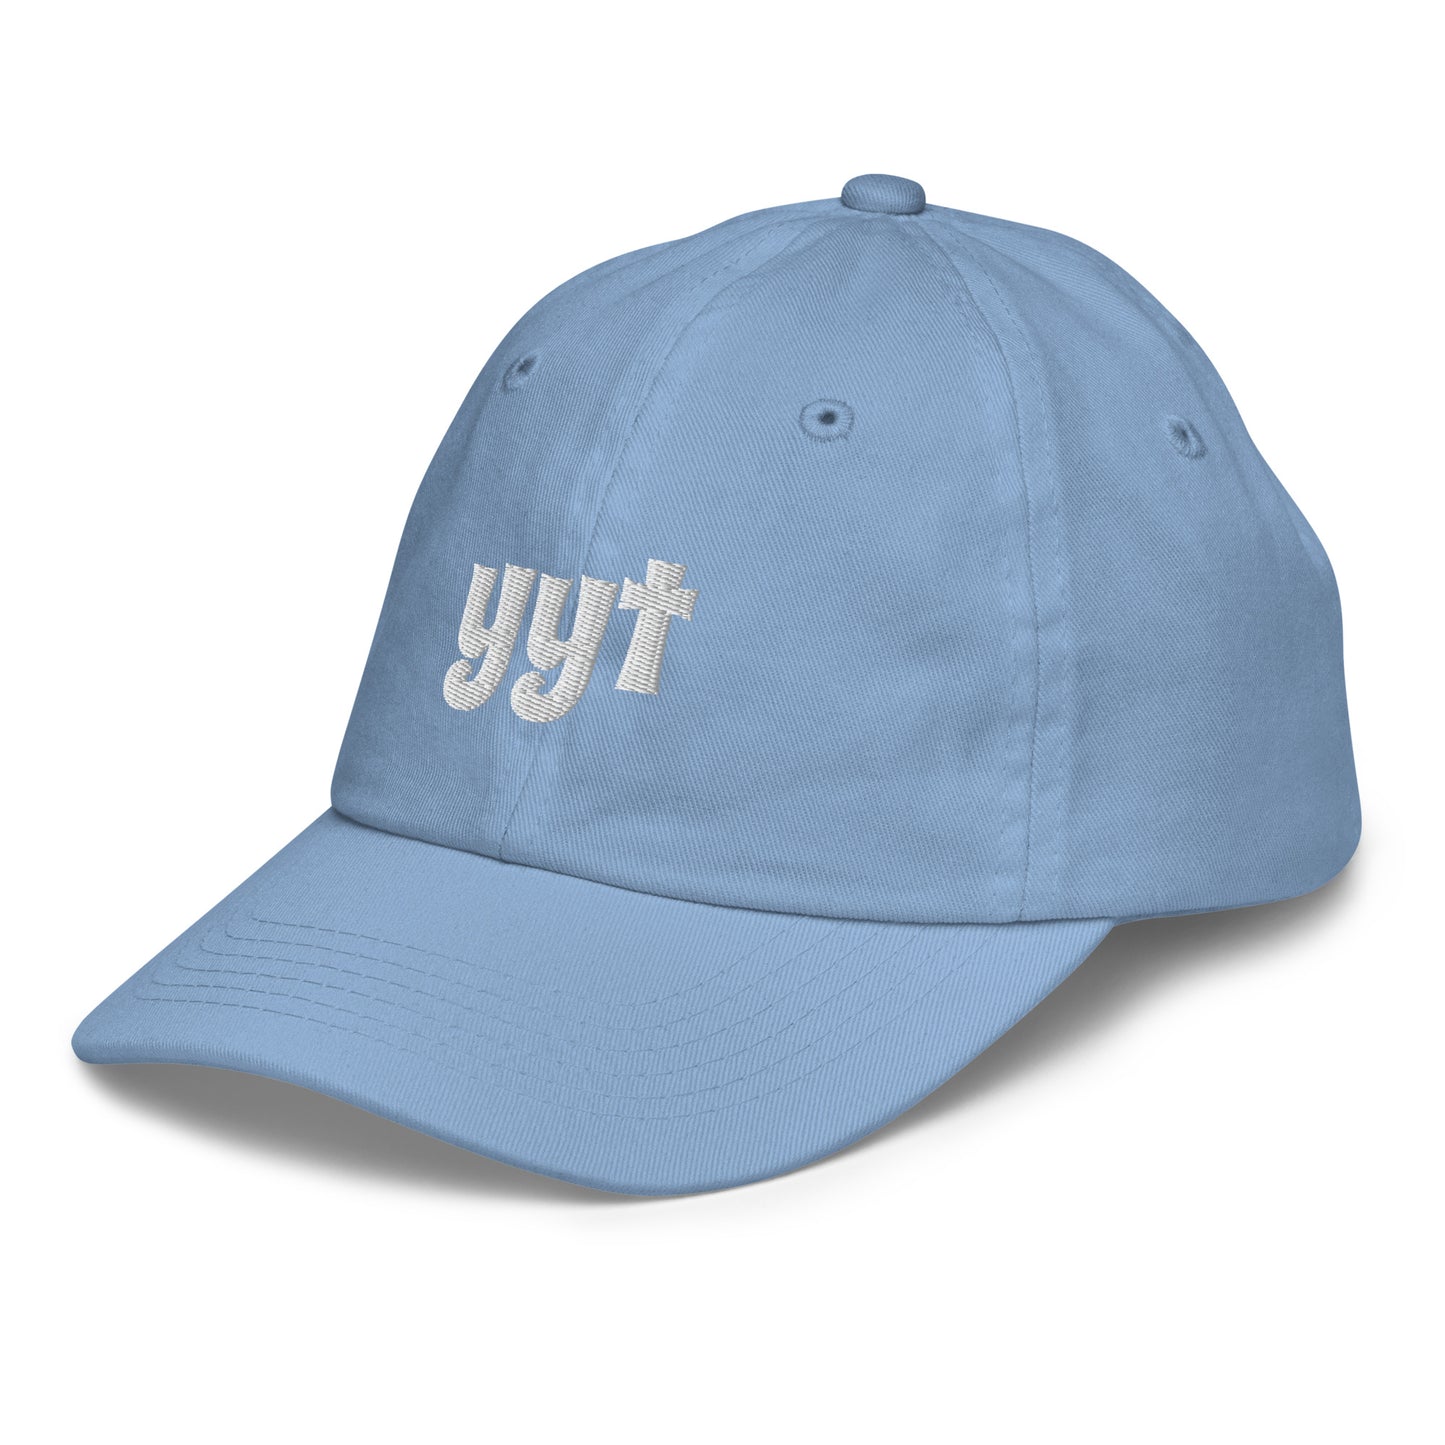 Groovy Kid's Baseball Cap - White • YYT St. John's • YHM Designs - Image 18